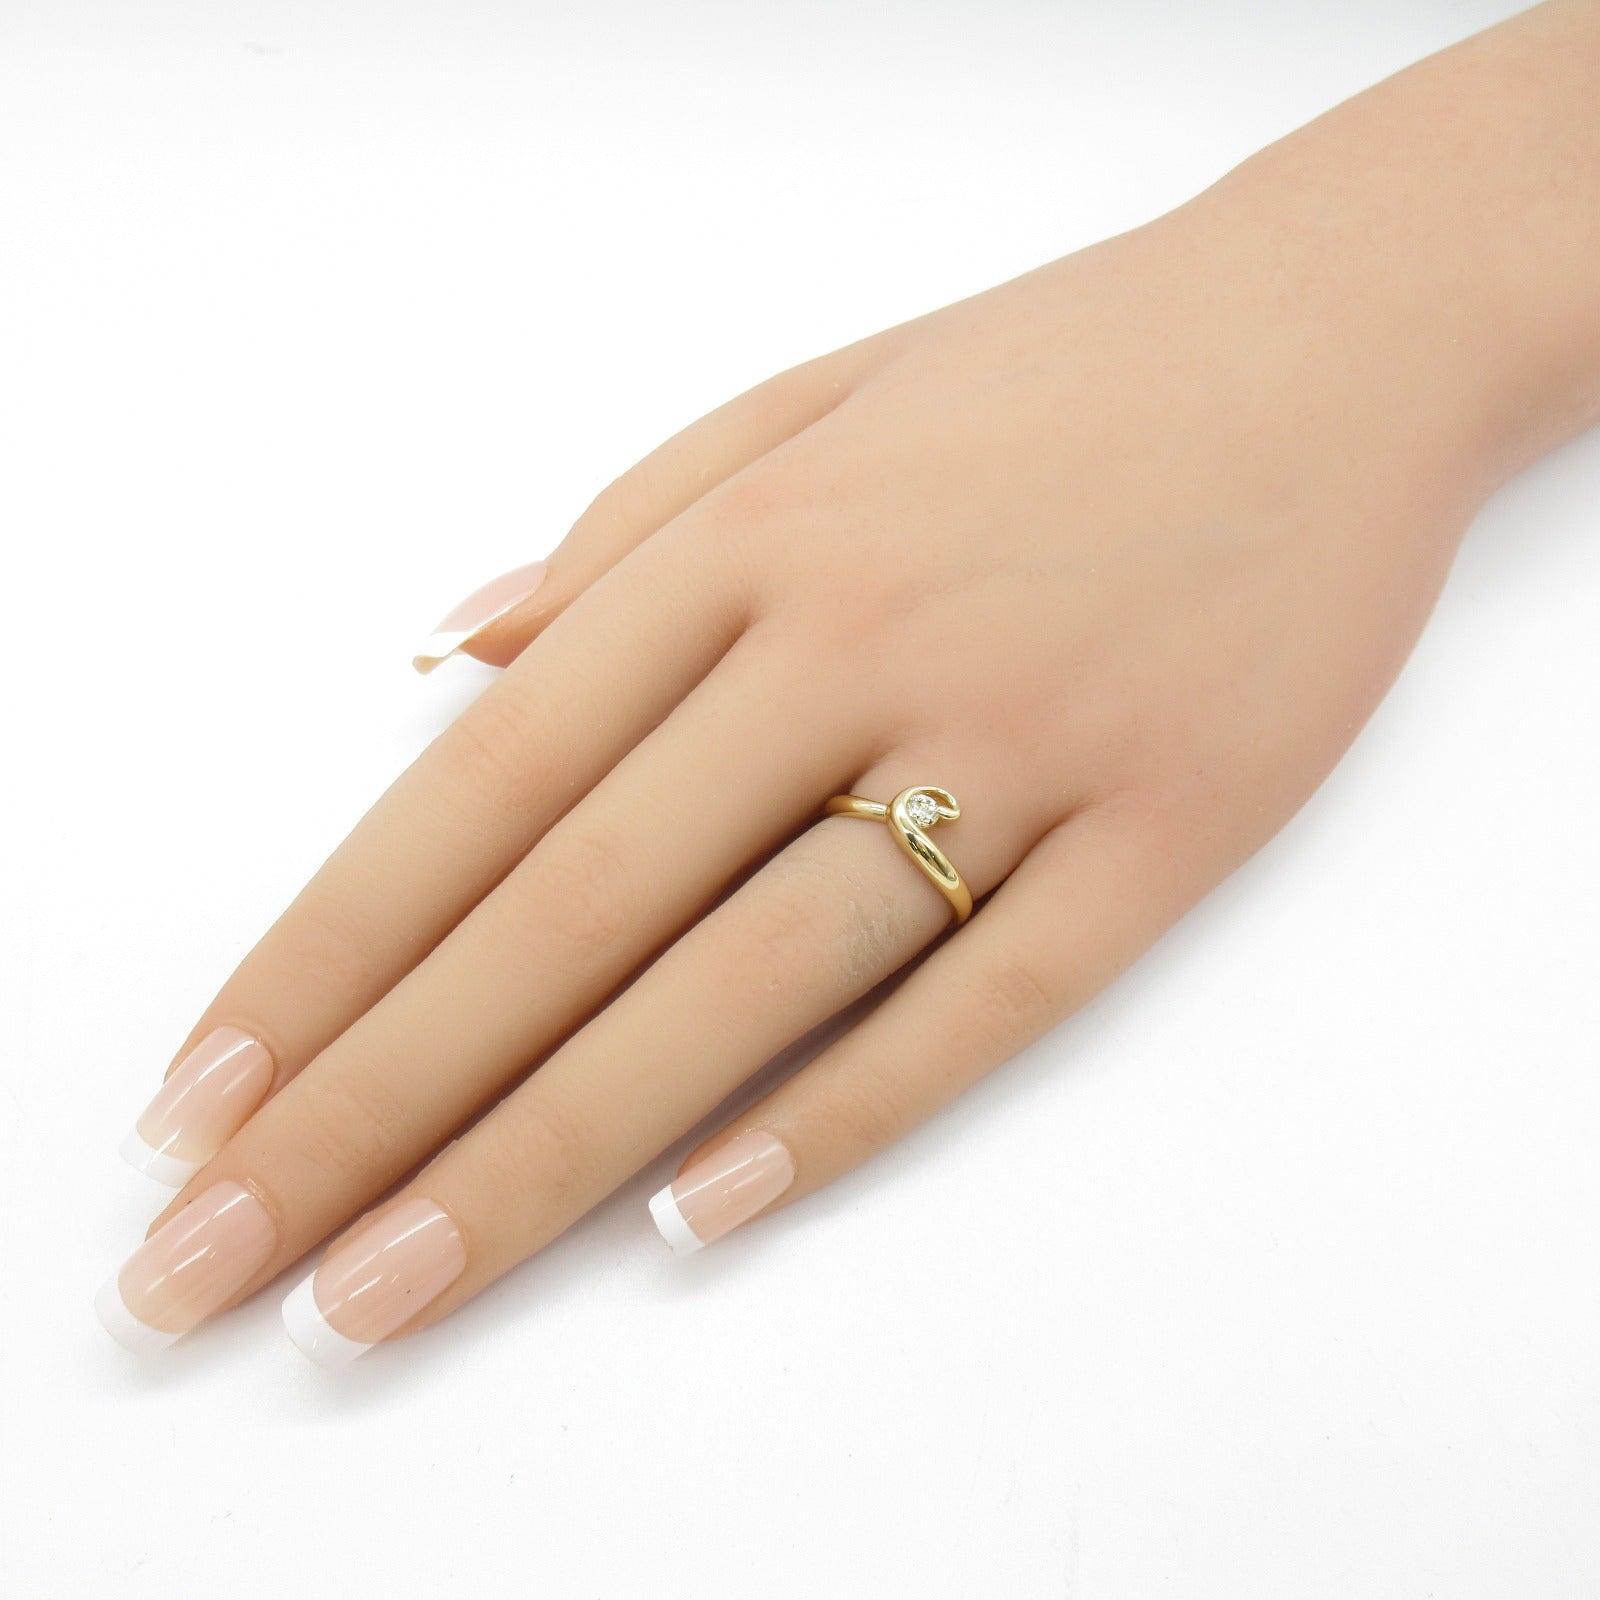 Jewelry Jewelry Diamond Ring Ring Ring Jewelry K18 (Yellow G) Diamond  Yellow Diamond 2.6g